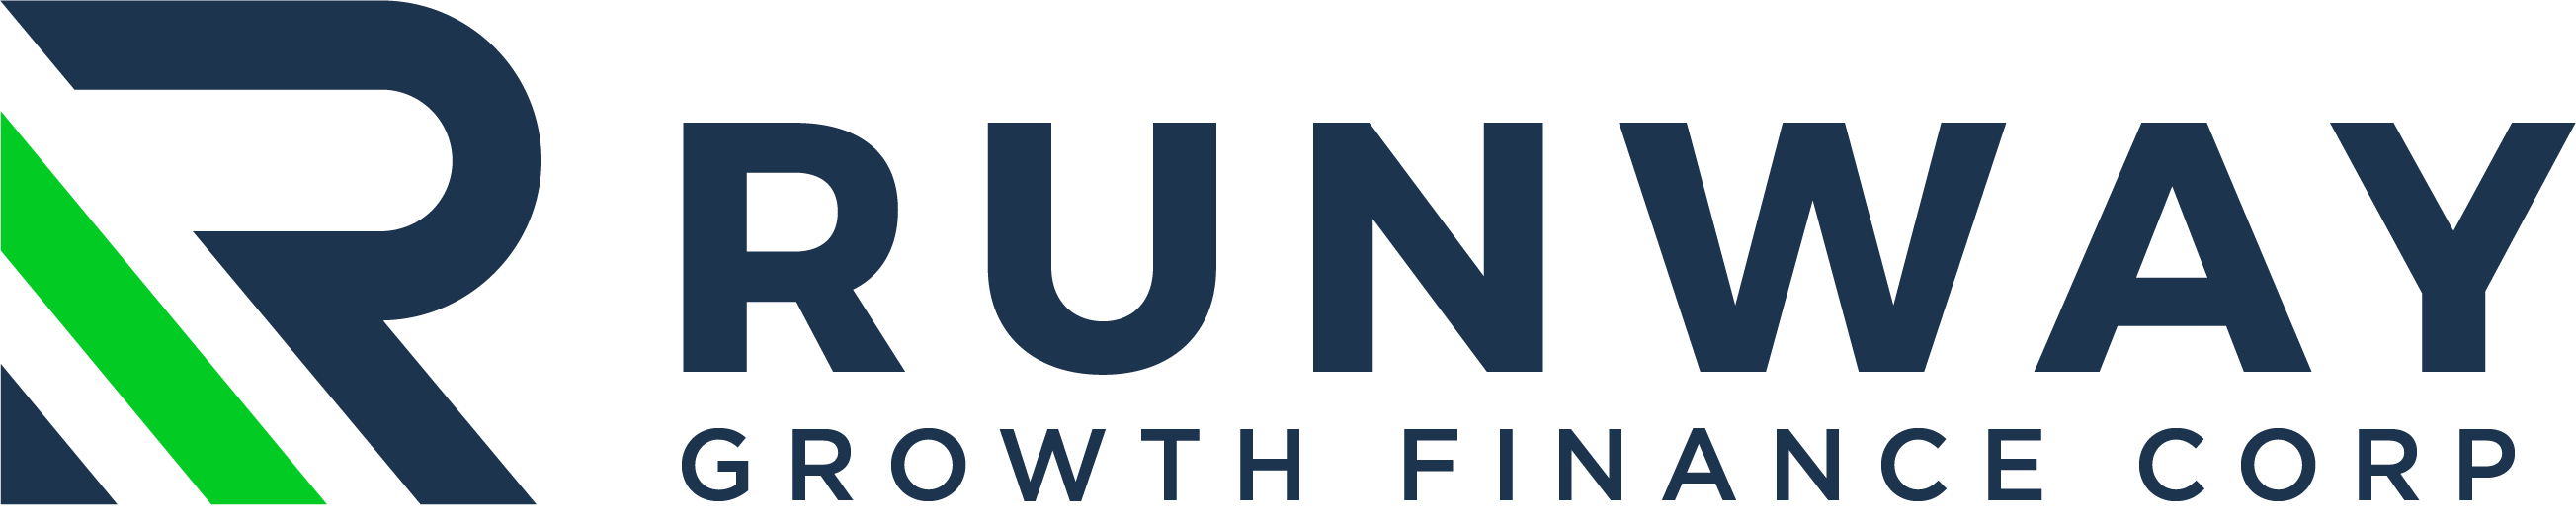 Runway Growth Finance Corp. Announces First Quarter Regular